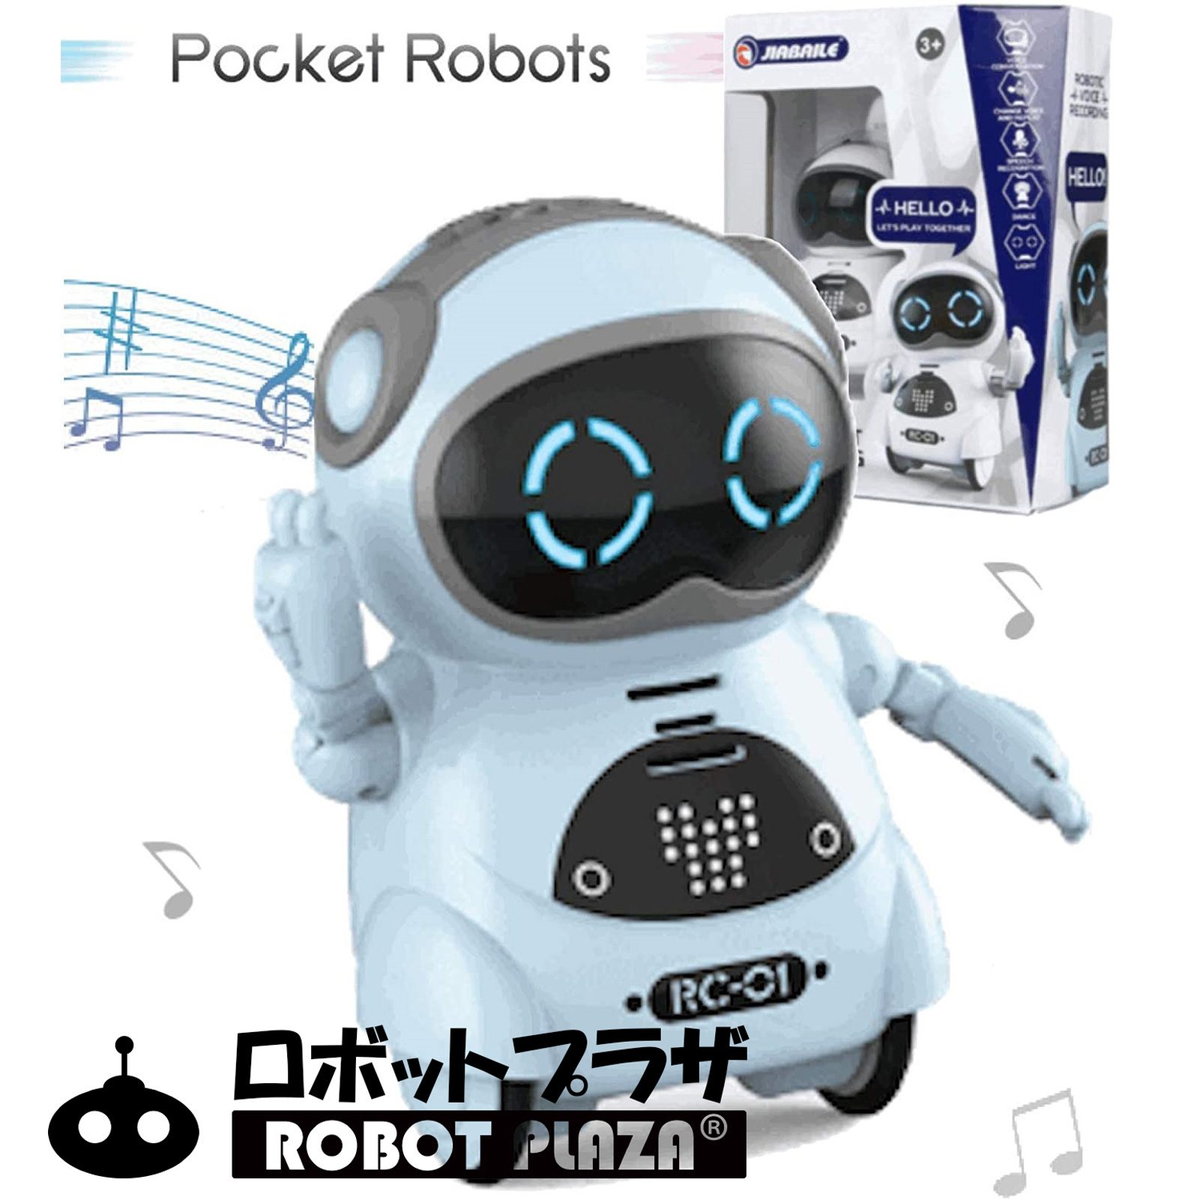 特価商品 ロボット おもちゃ ポケットロボット 英語 簡単 会話